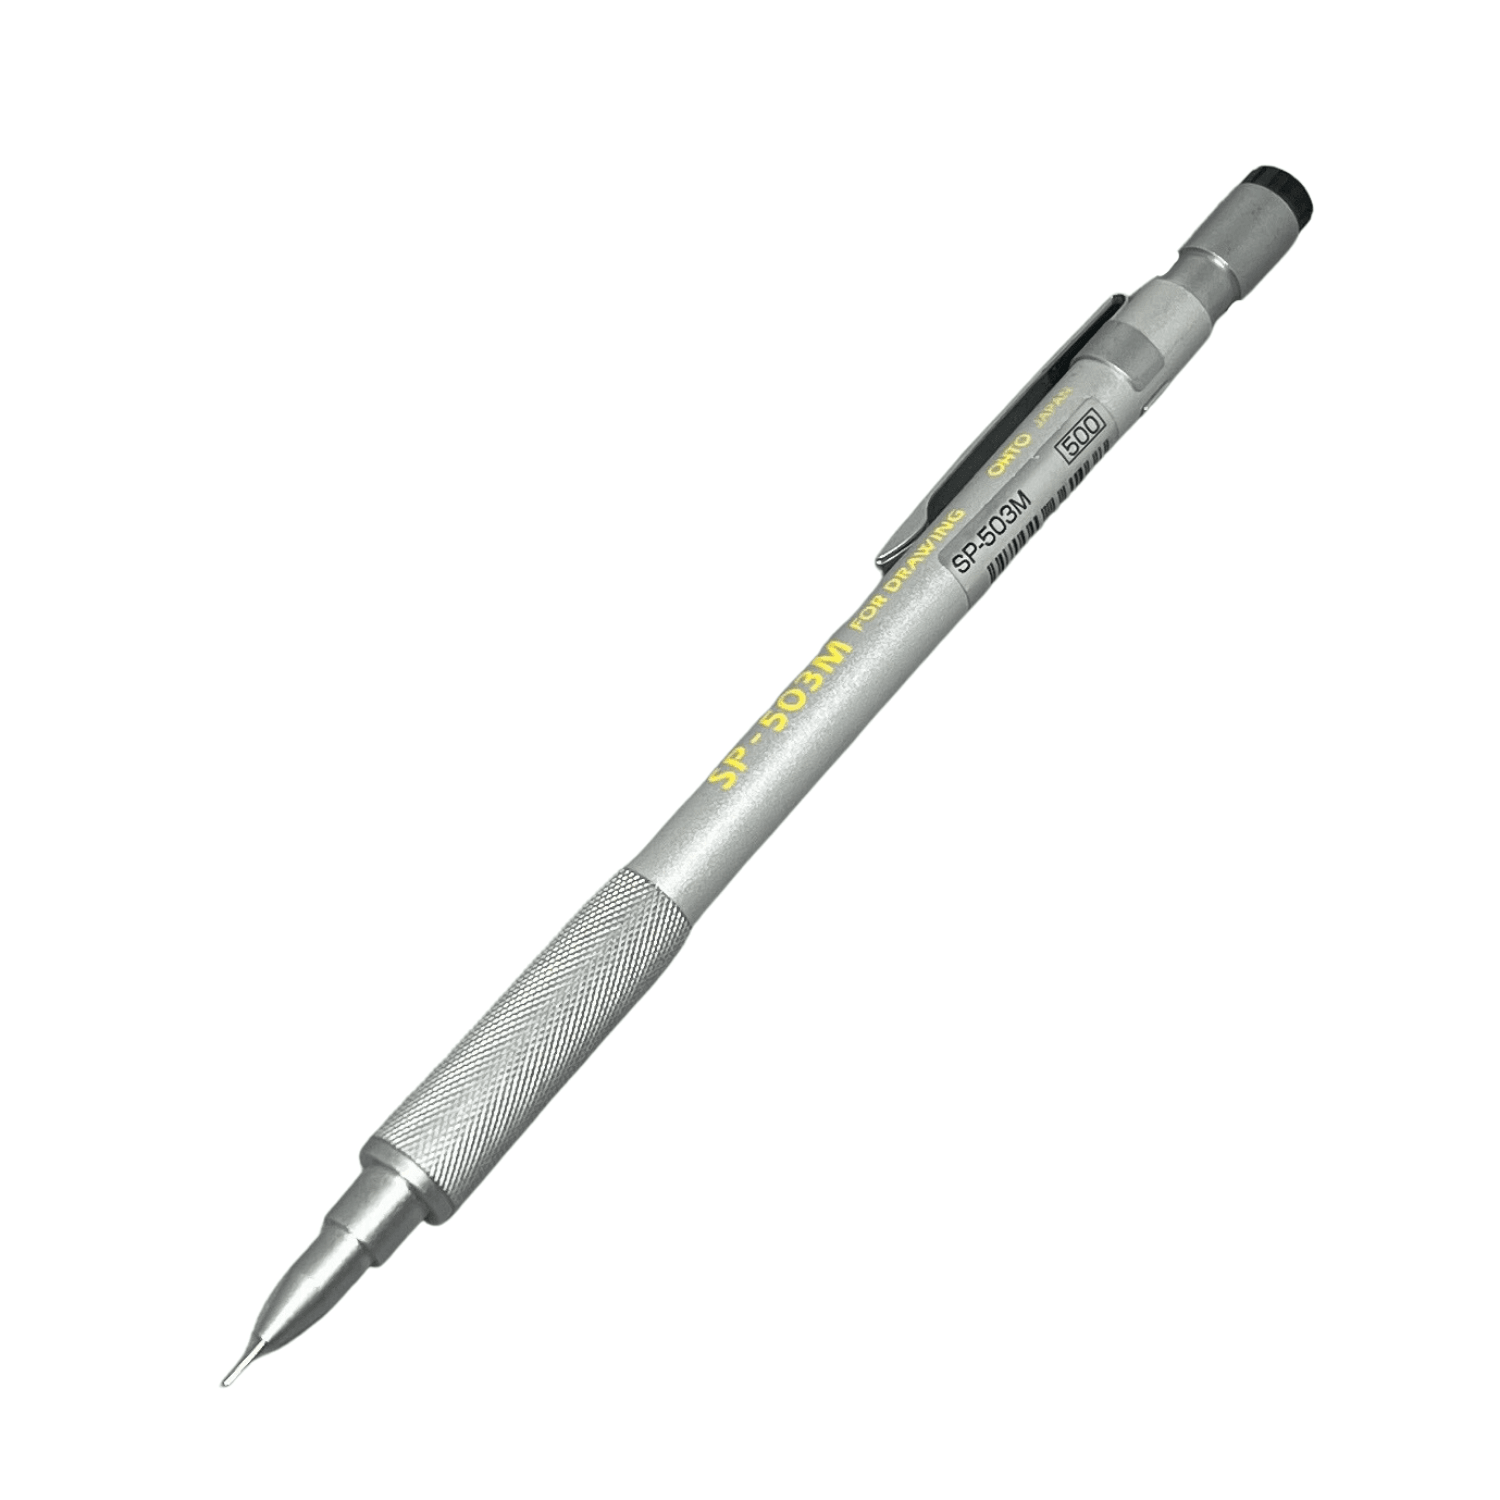 Ohto Sp 503 Mechanical Pencil 0.3 MM